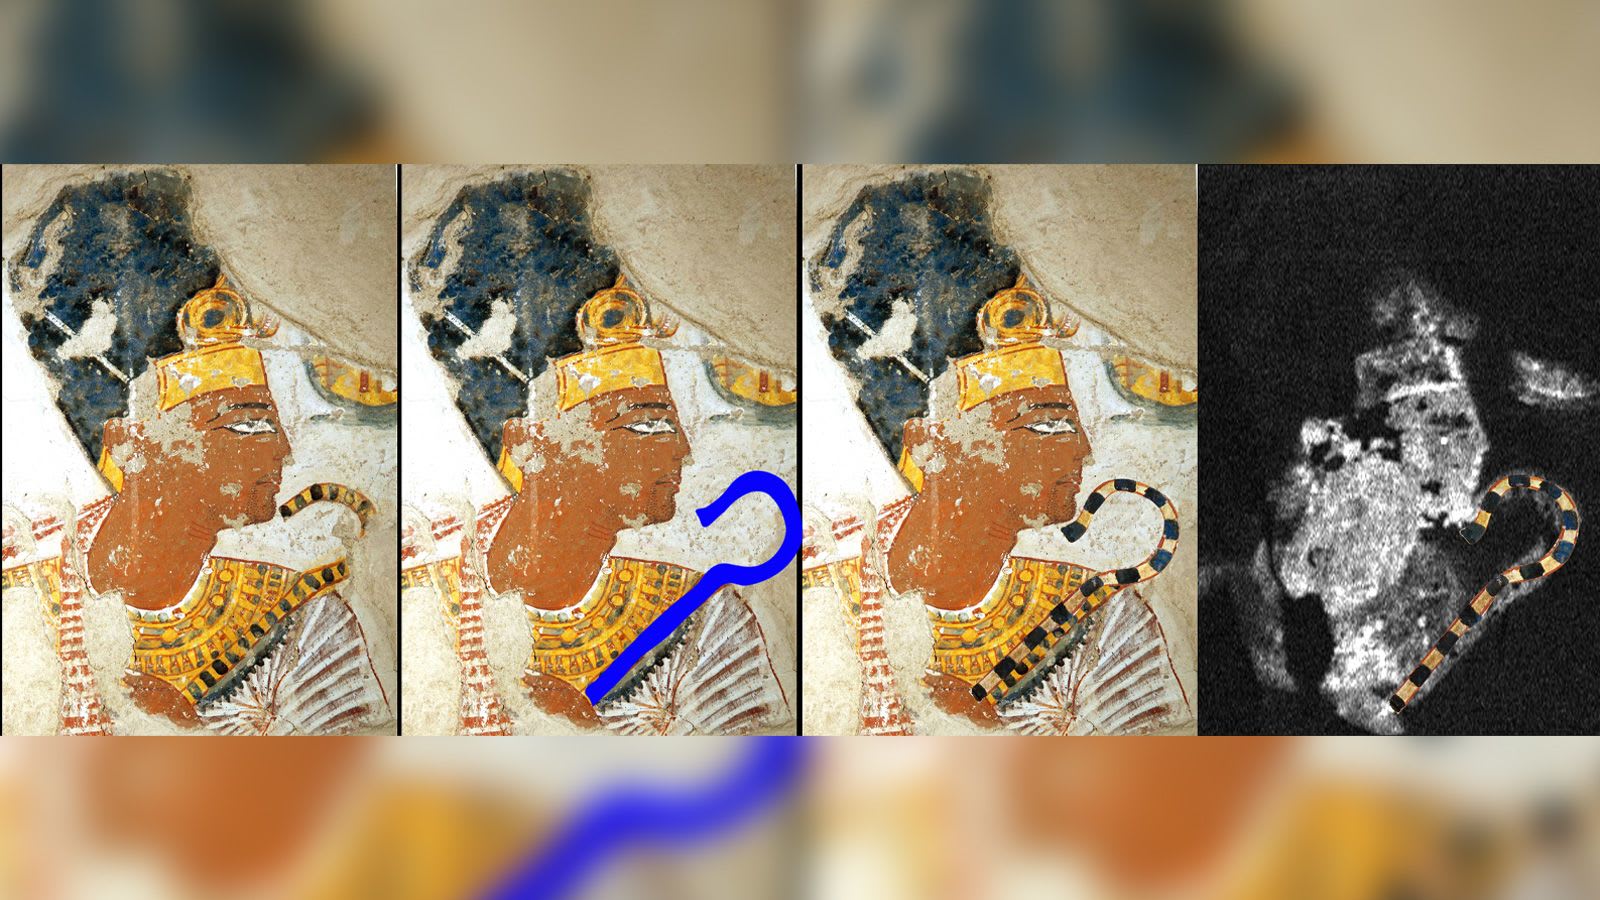 تقنية حديثة تكشف تفاصيل خفية في لوحتين مصريتين قديمتين